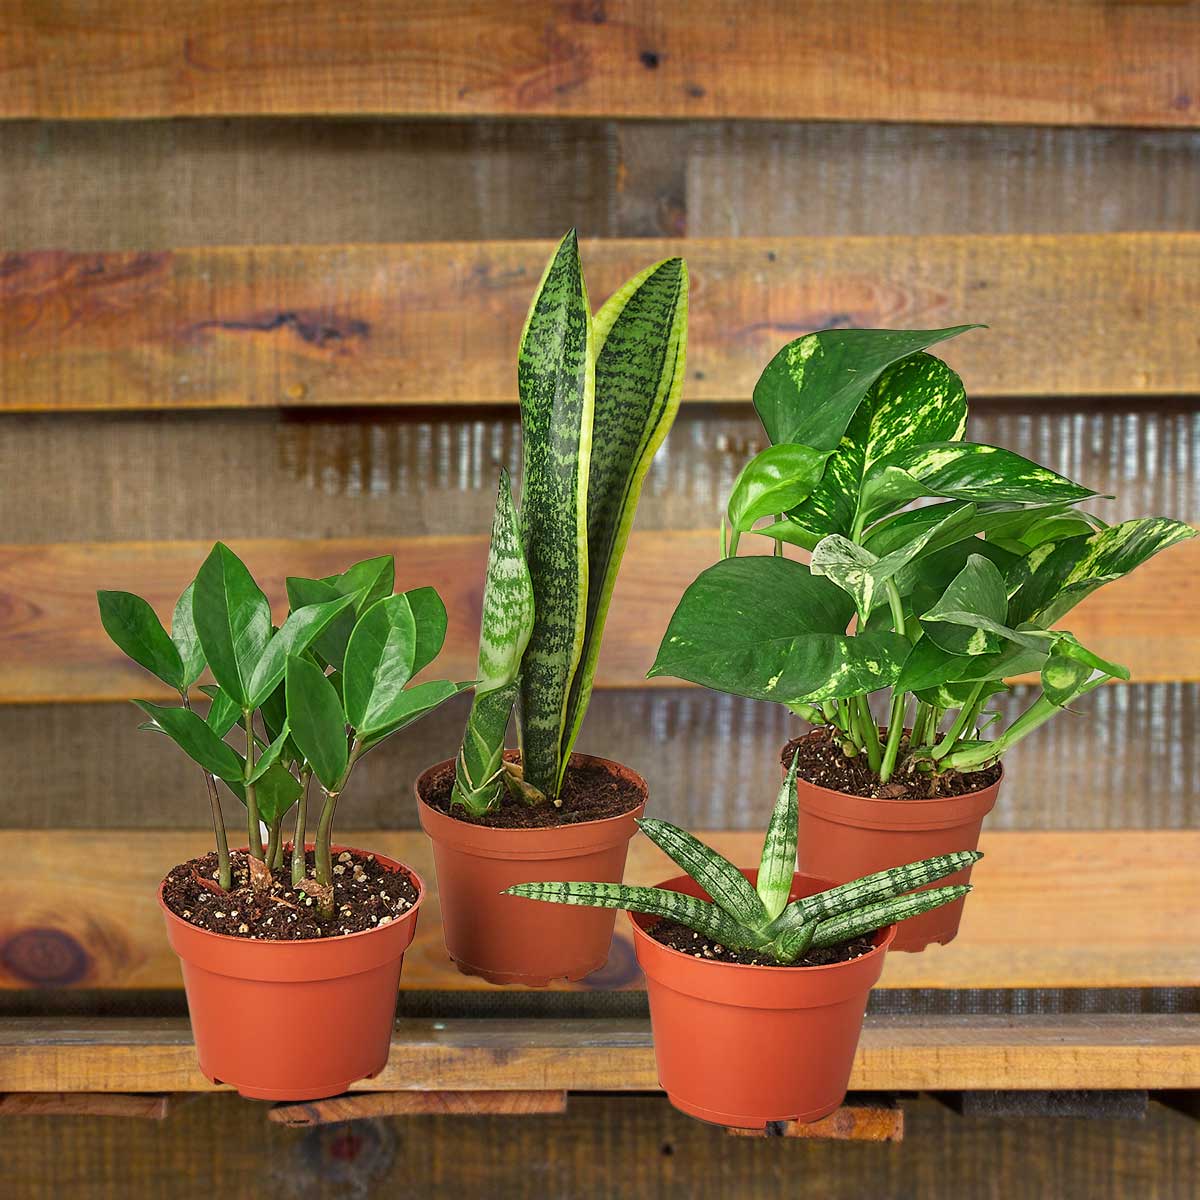 easy care plant bundles for sale best online plant nursery | houseplantsale.com - houseplants for sale online | best indoor plants | forget me not flower market